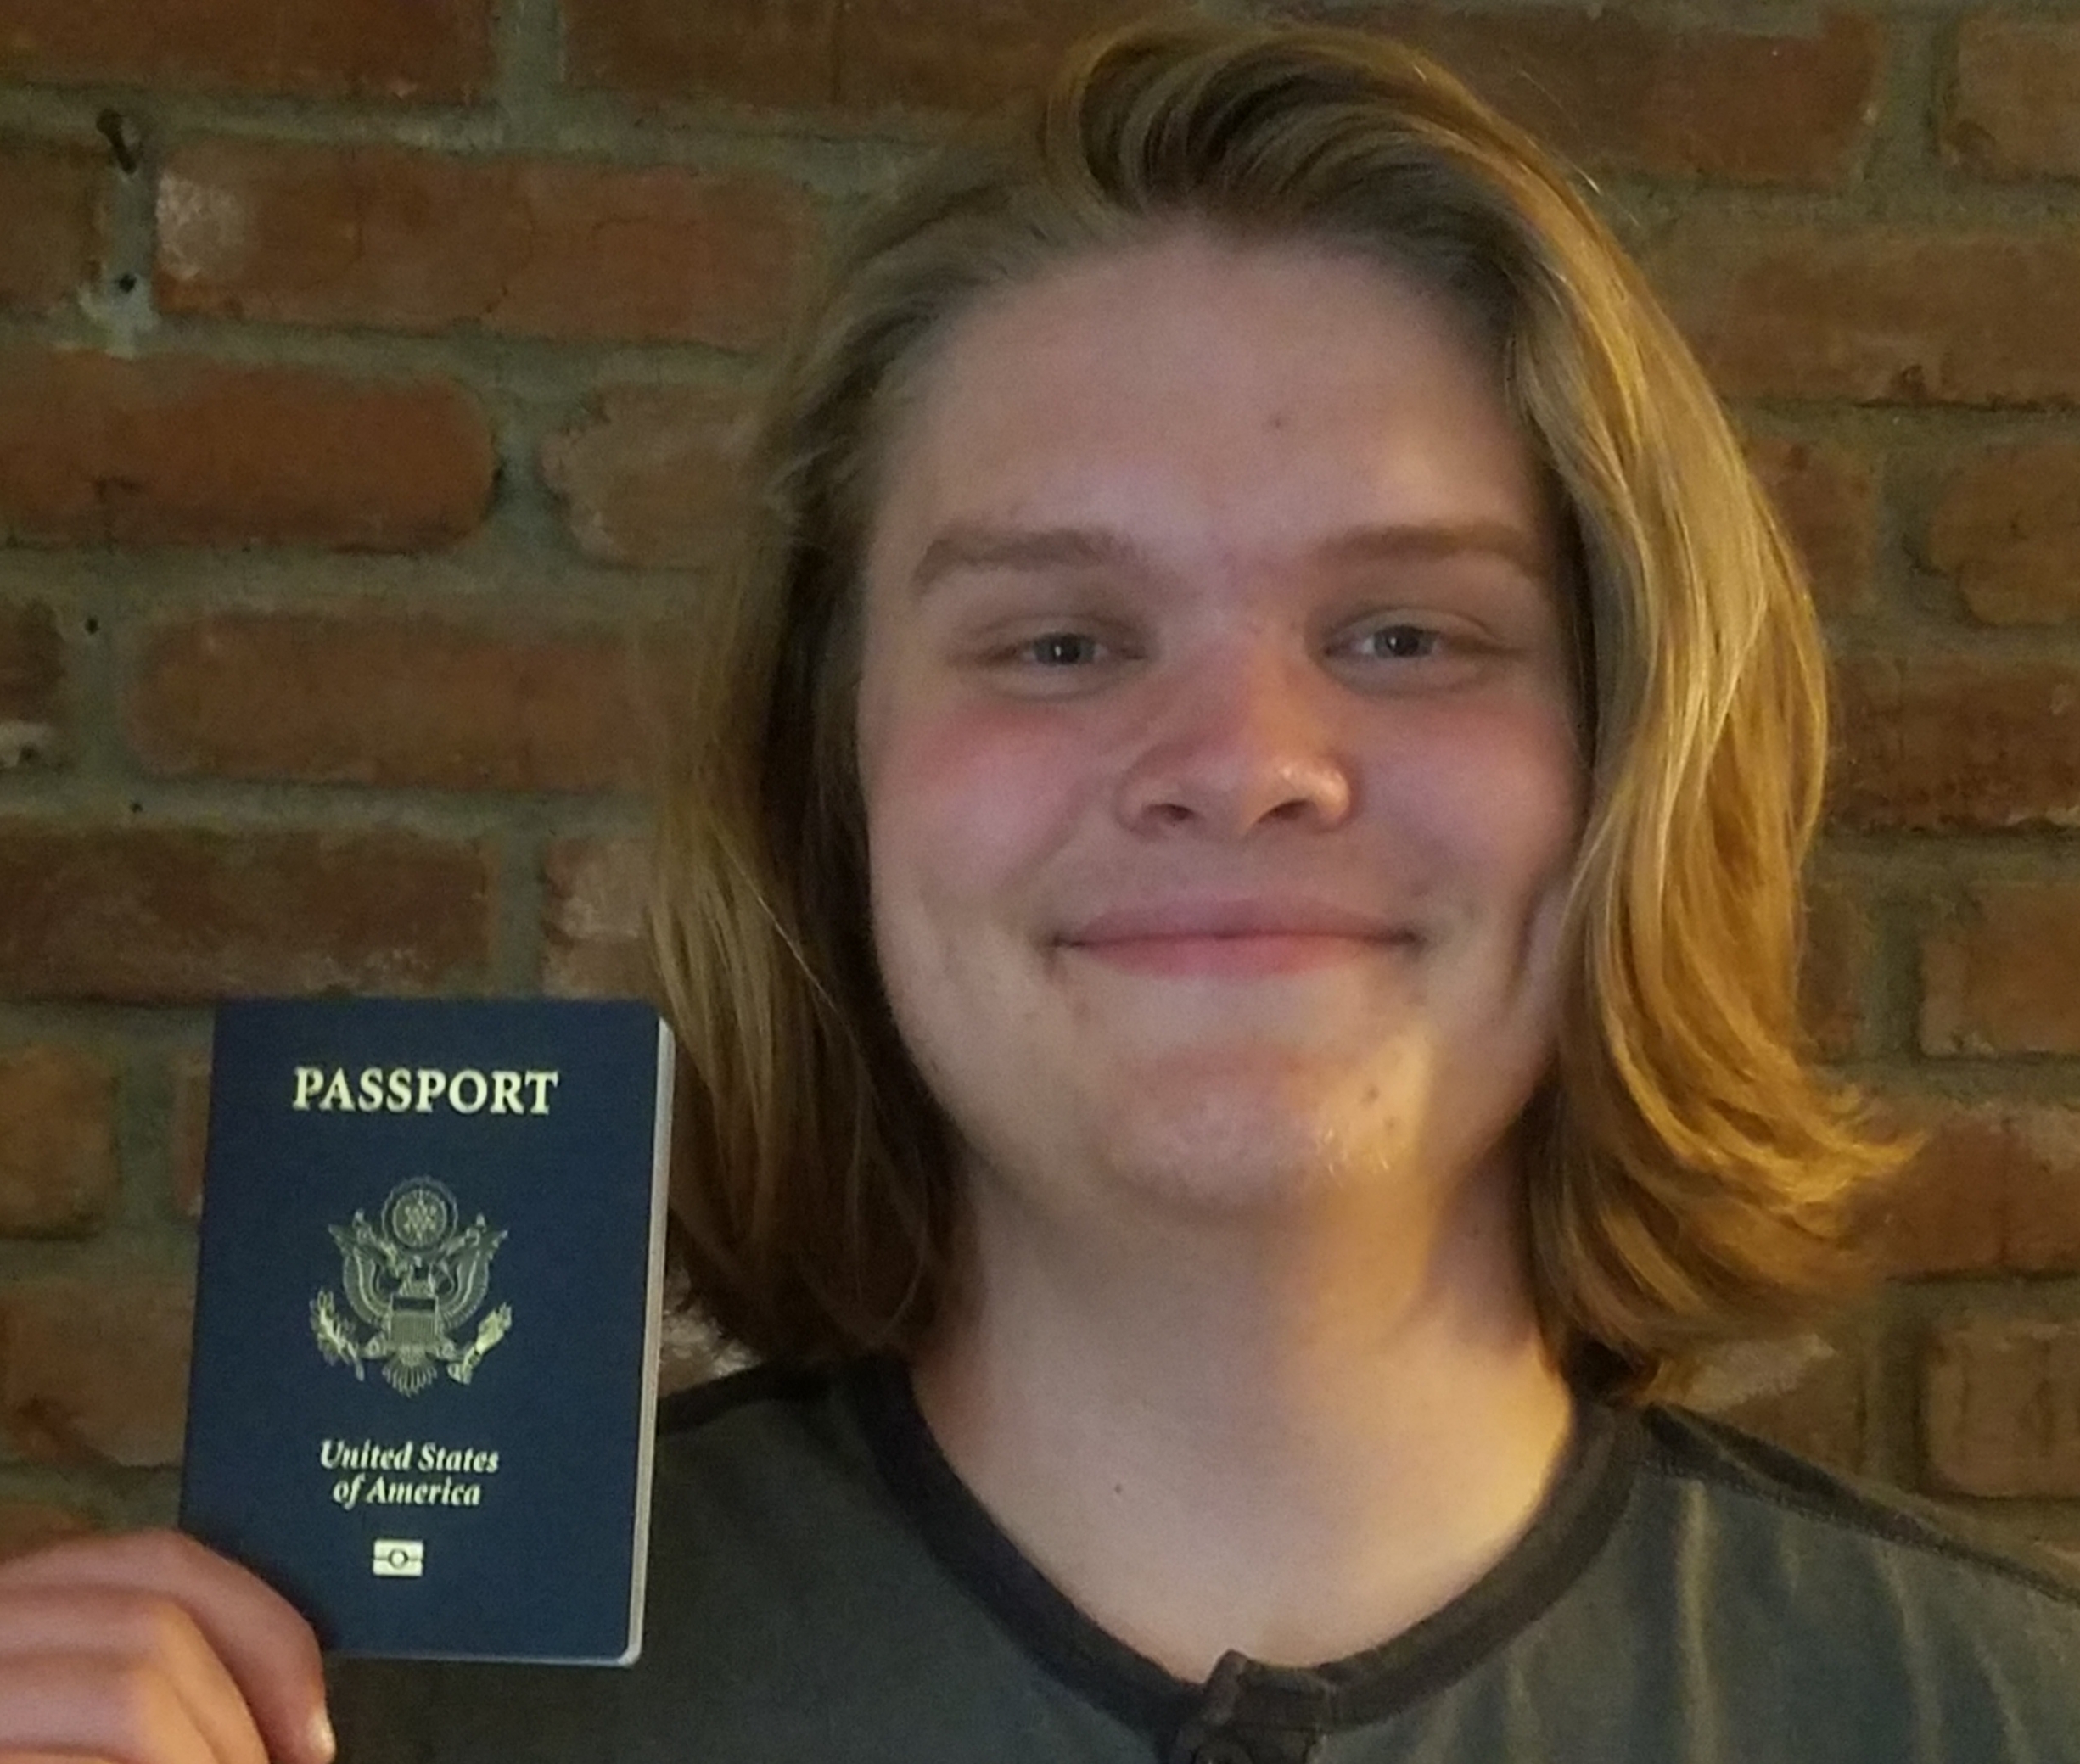 Passport!